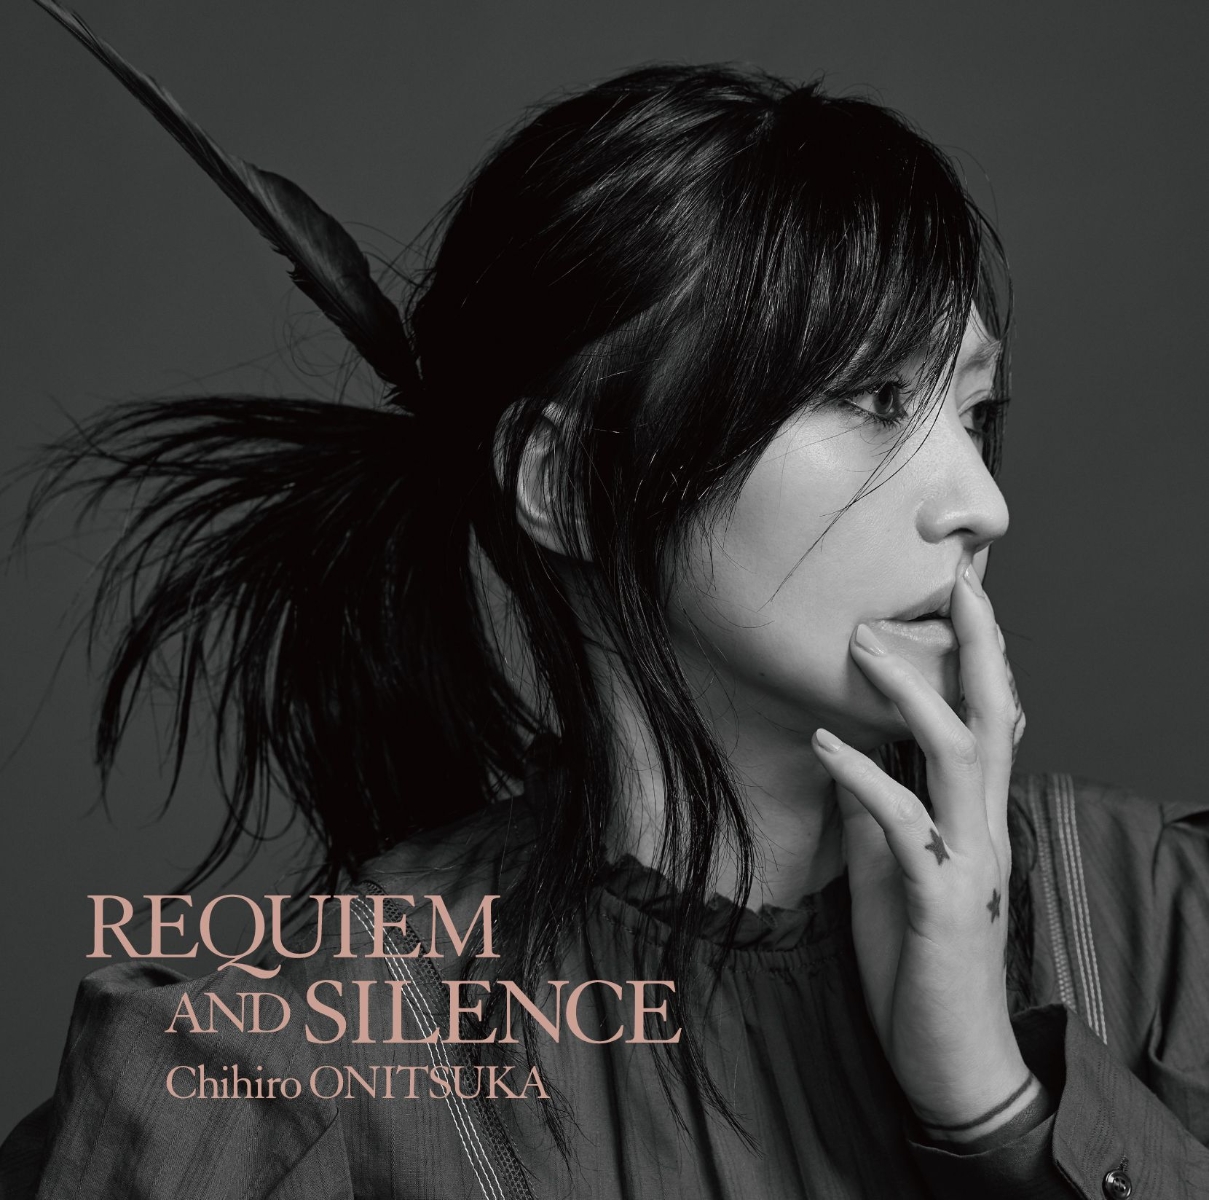 楽天ブックス th Anniversary オールタイムベストアルバム Requiem And Silence 初回限定盤 2cd 鬼束ちひろ Cd